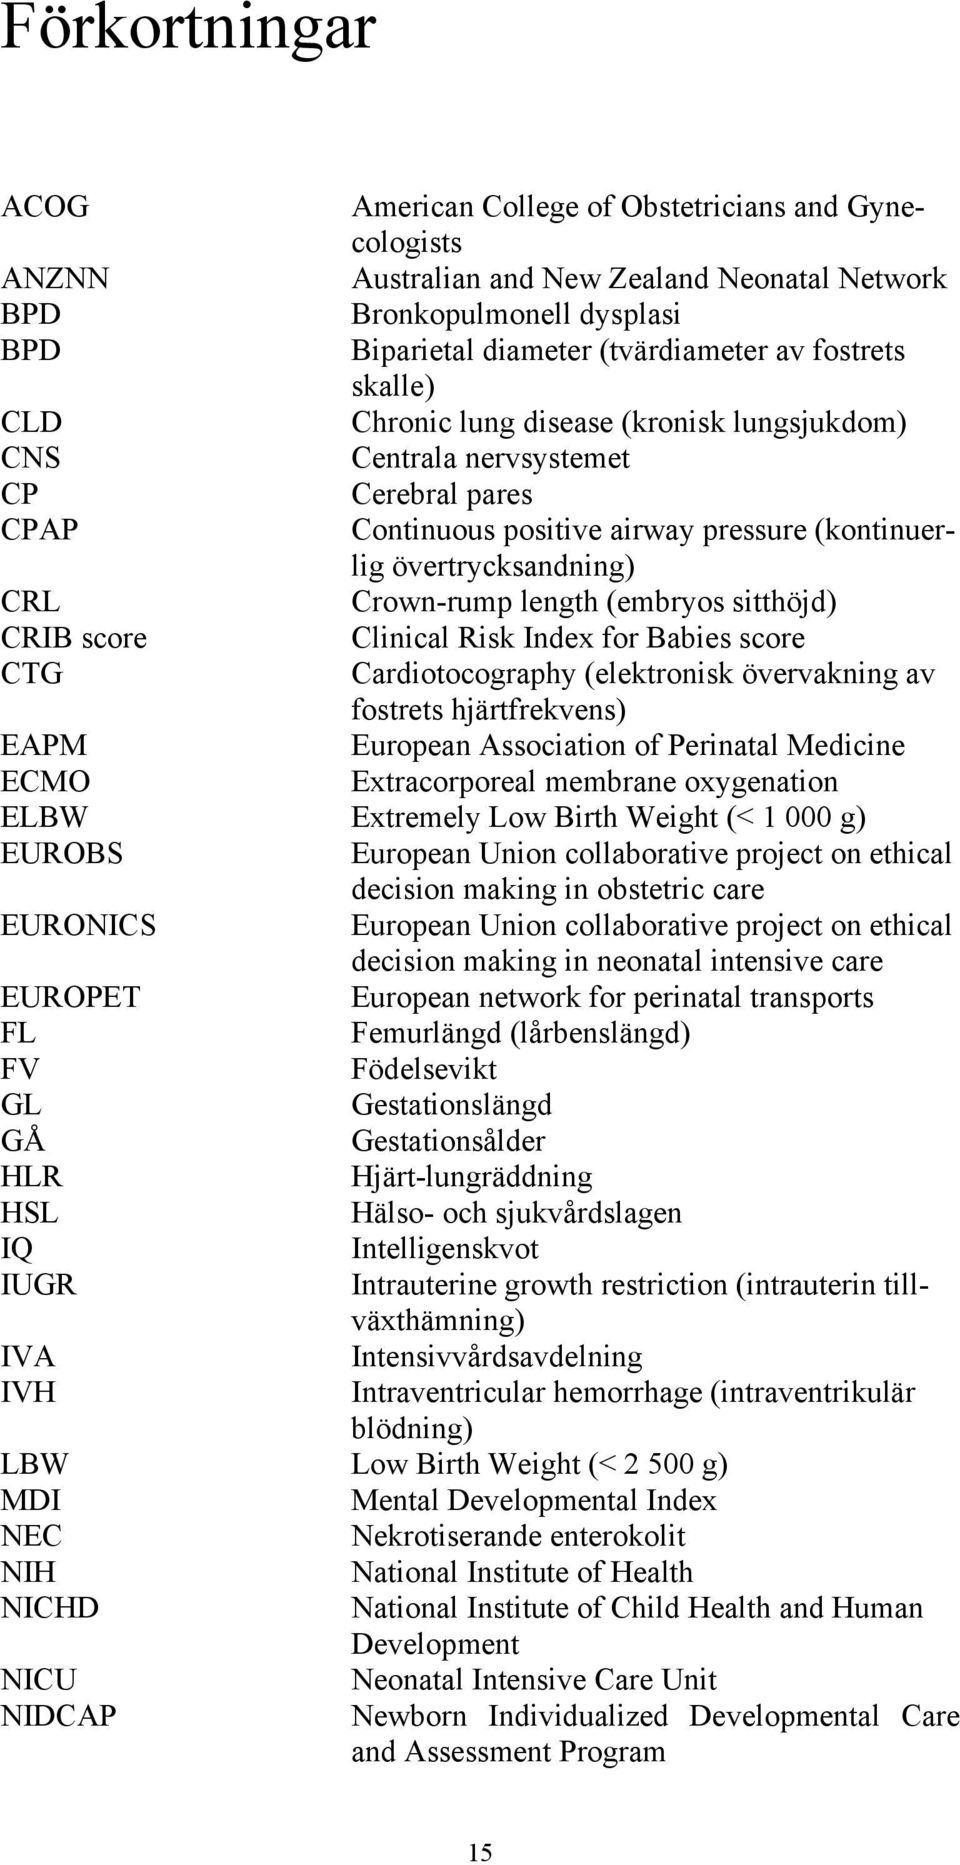 (embryos sitthöjd) CRIB score Clinical Risk Index for Babies score CTG Cardiotocography (elektronisk övervakning av fostrets hjärtfrekvens) EAPM European Association of Perinatal Medicine ECMO